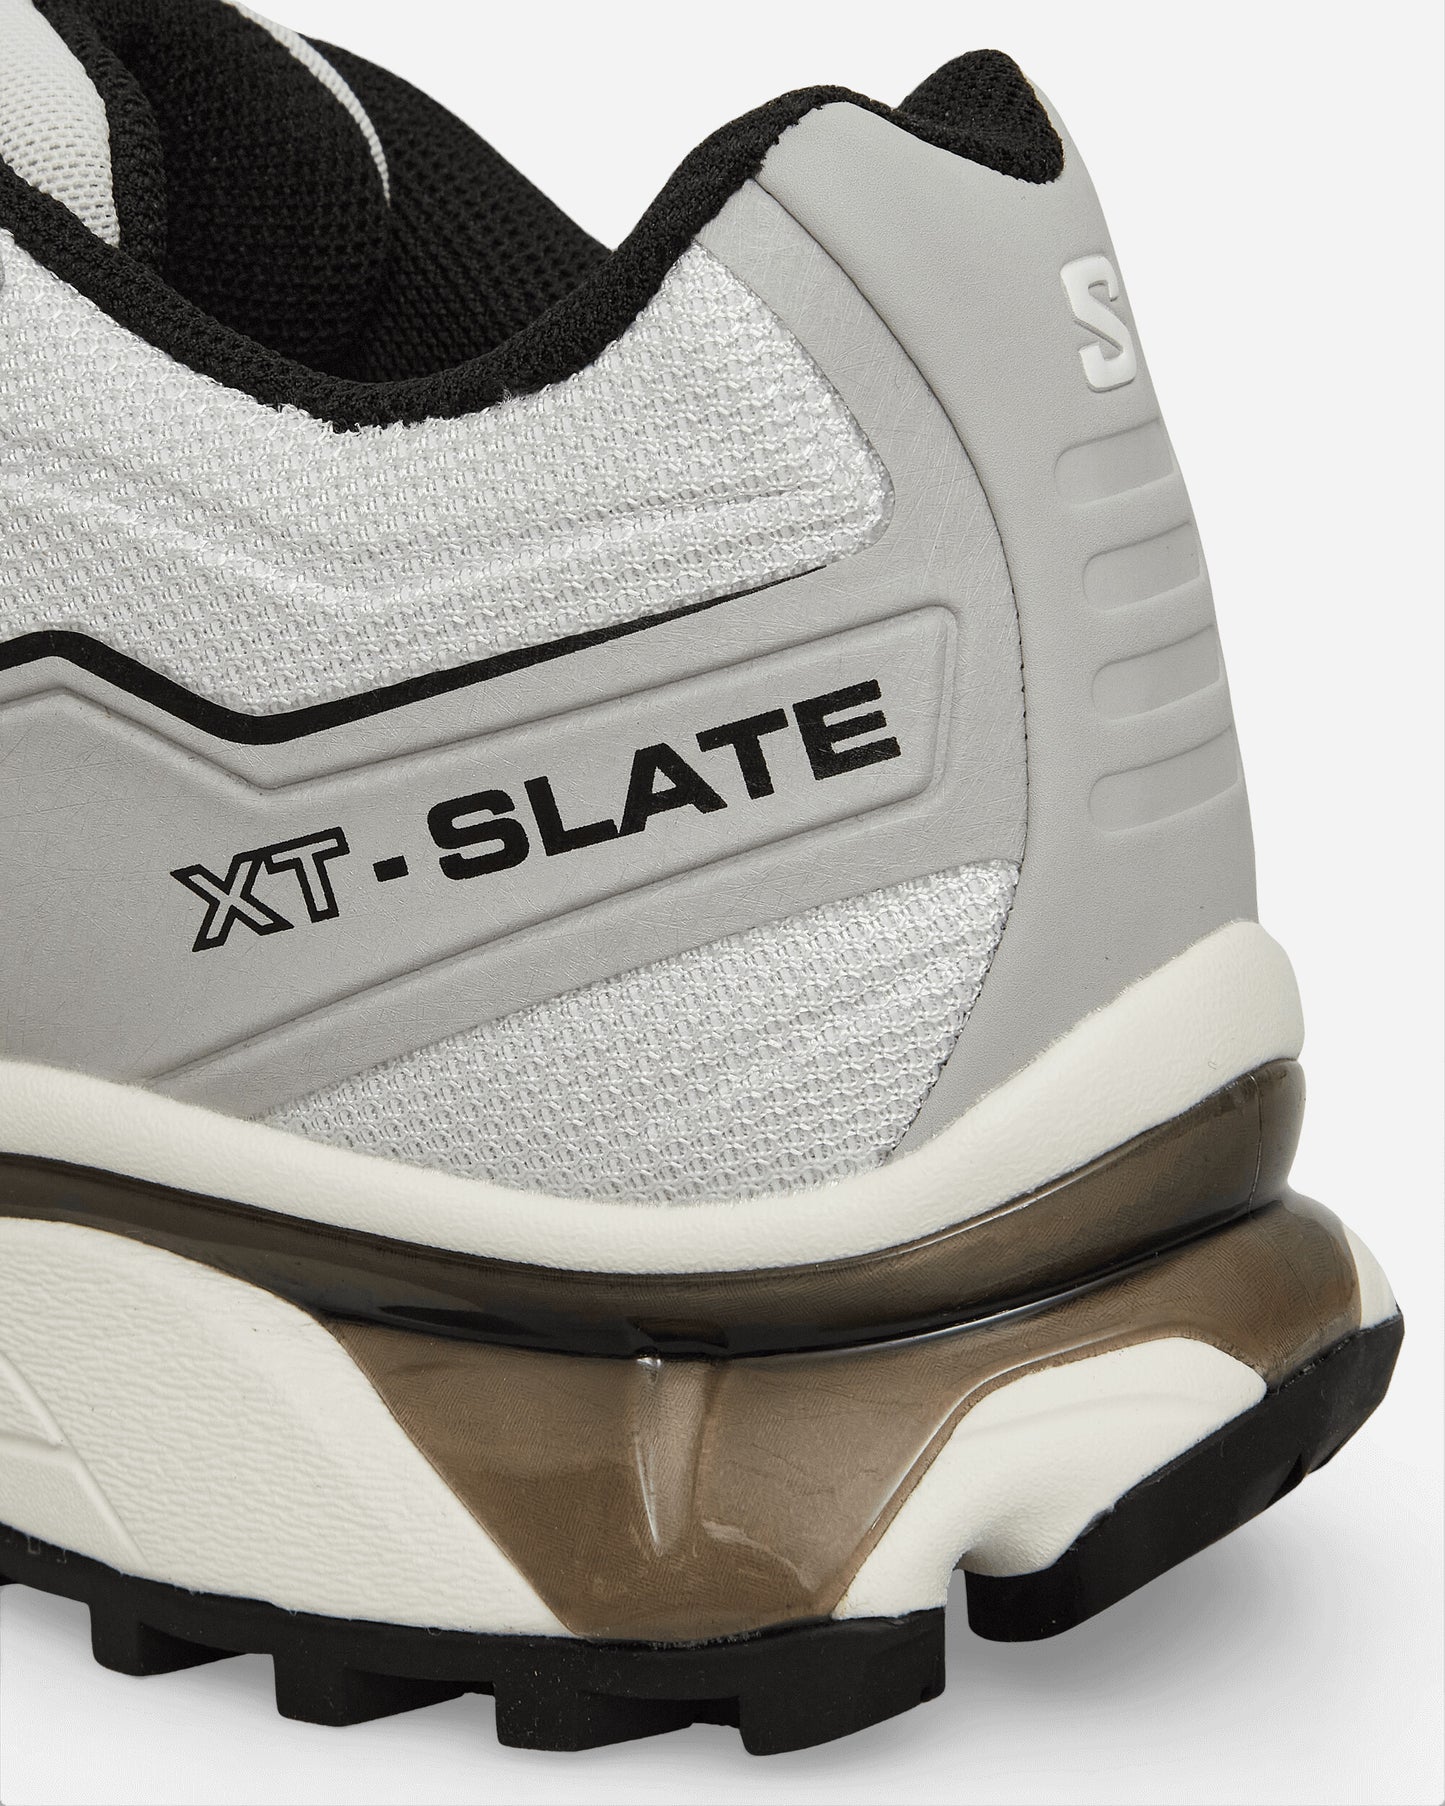 Salomon Xt-Slate Glacier Gray/Ghost Gray Sneakers Low L47460500